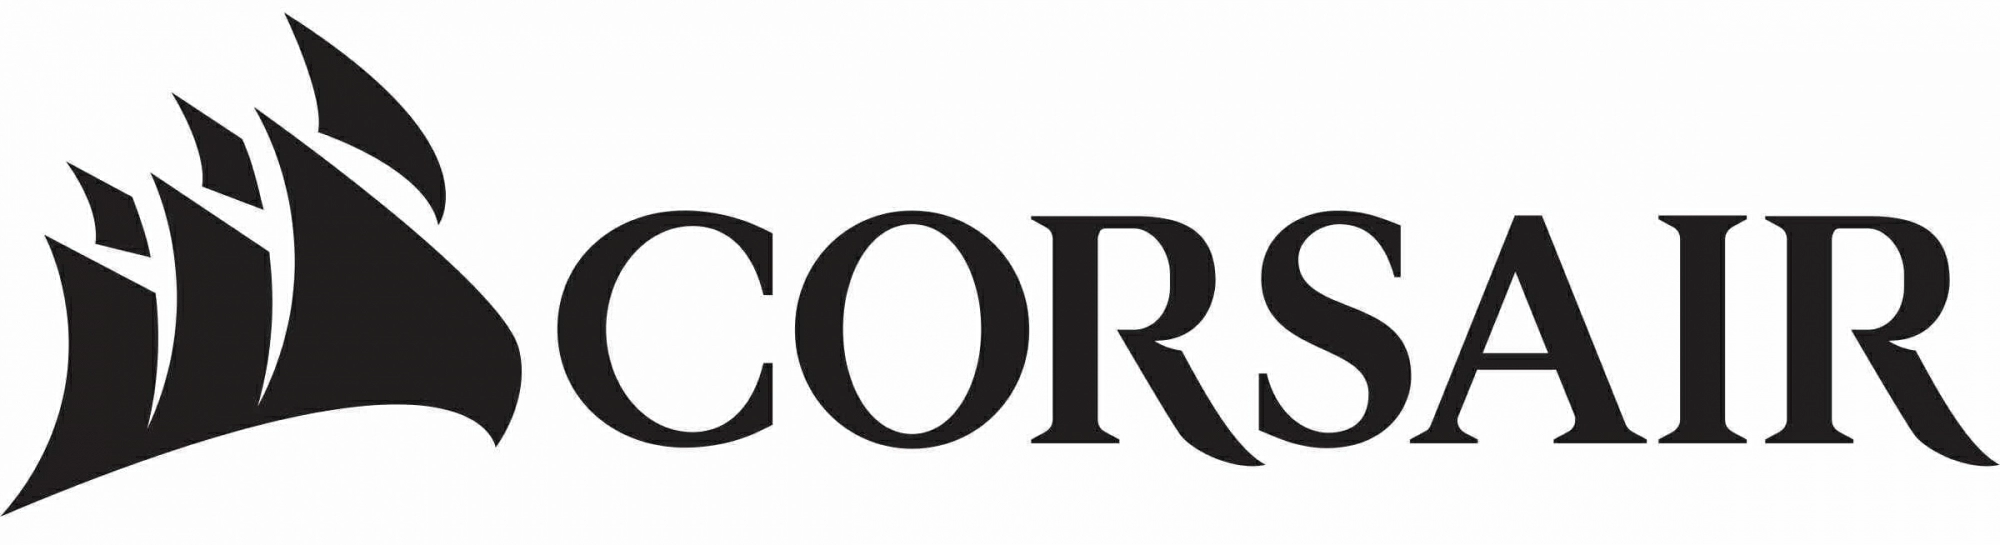 Логотип Corsair